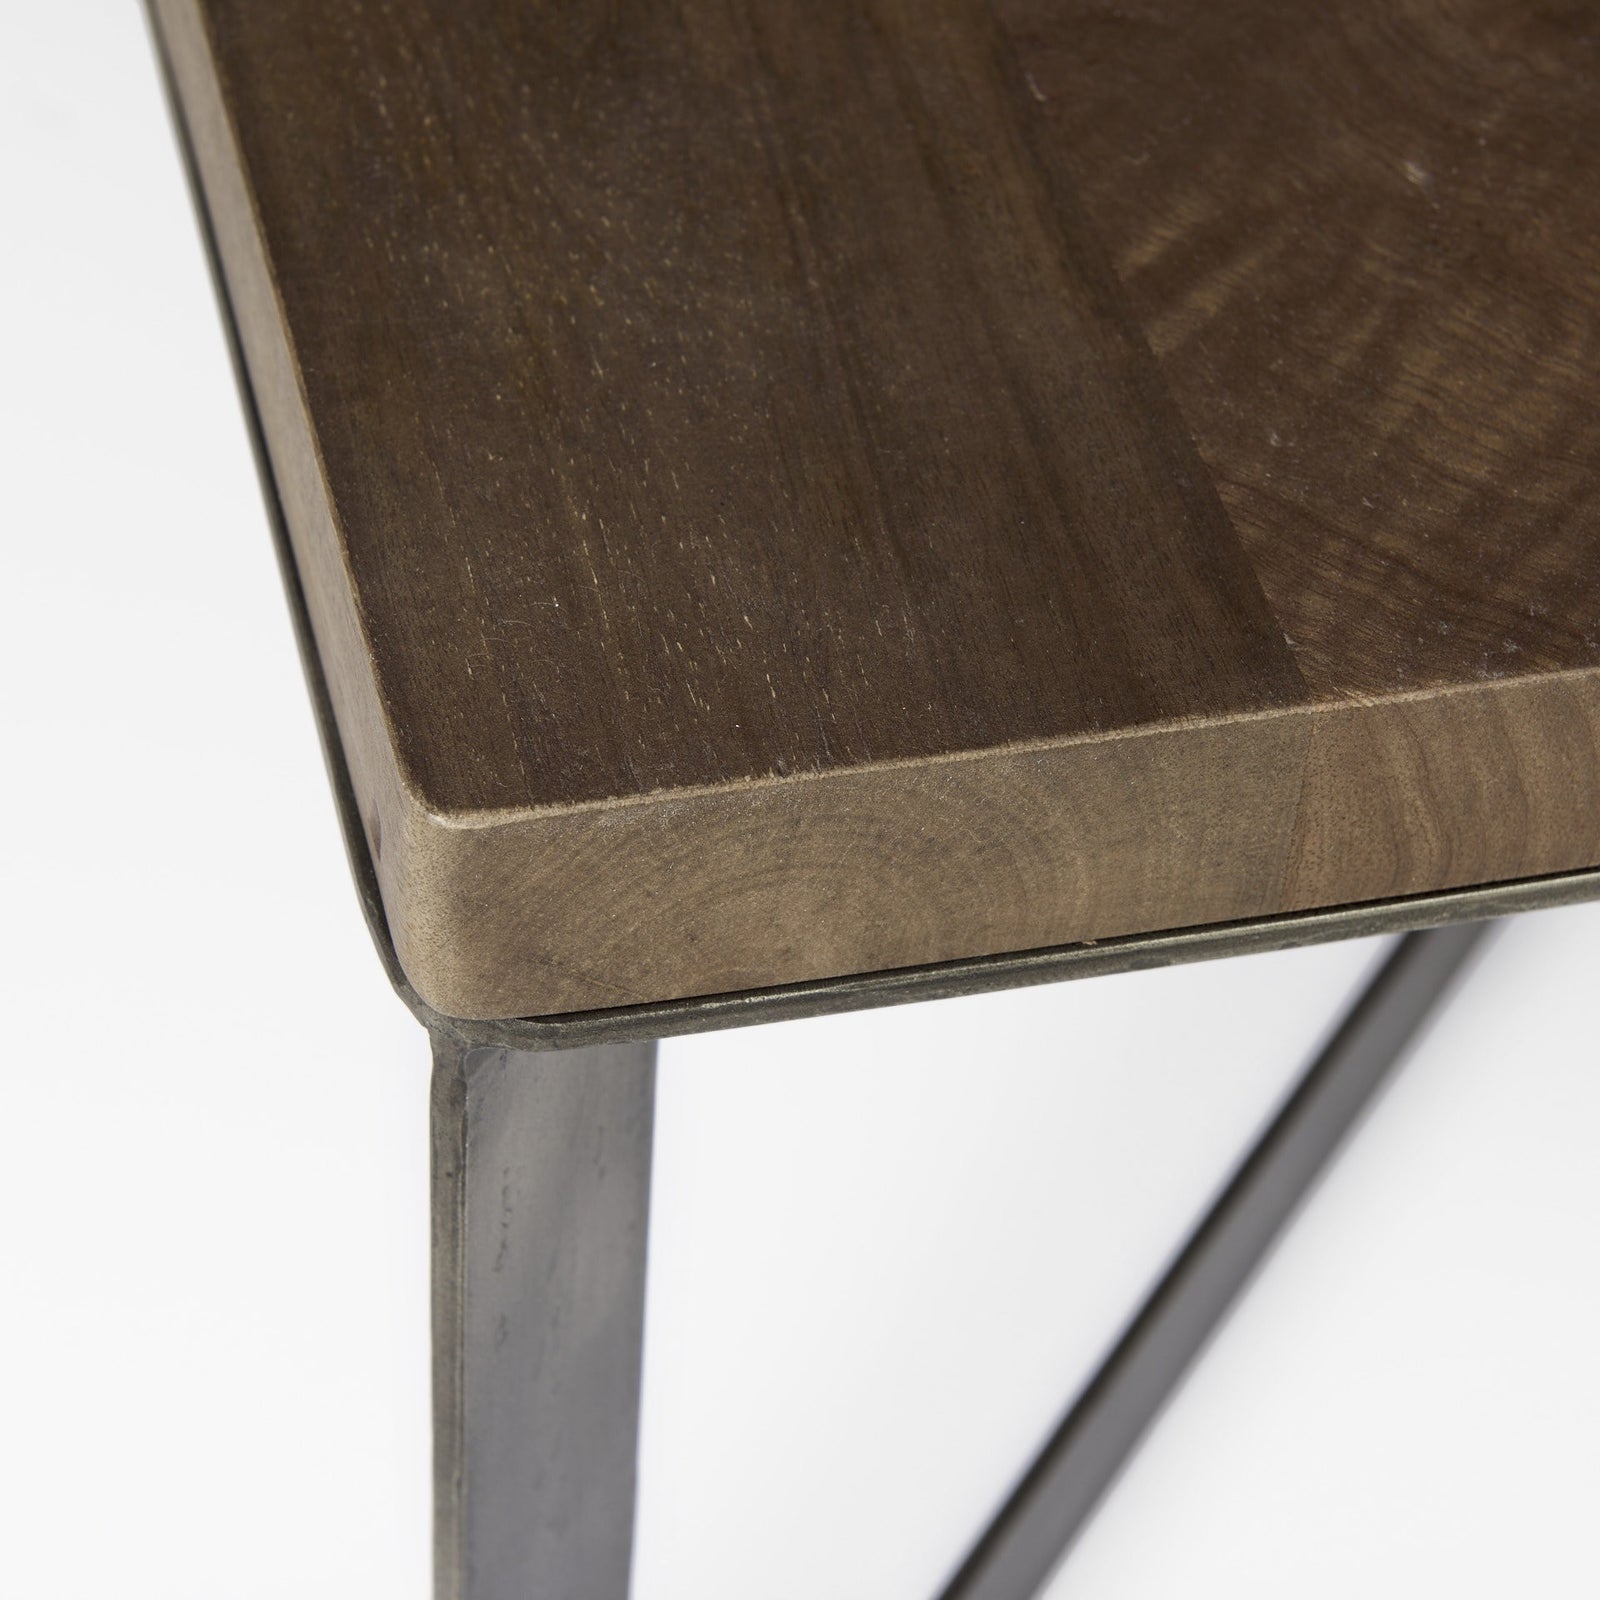 Dark Brown Wood And Metal Coffee Table